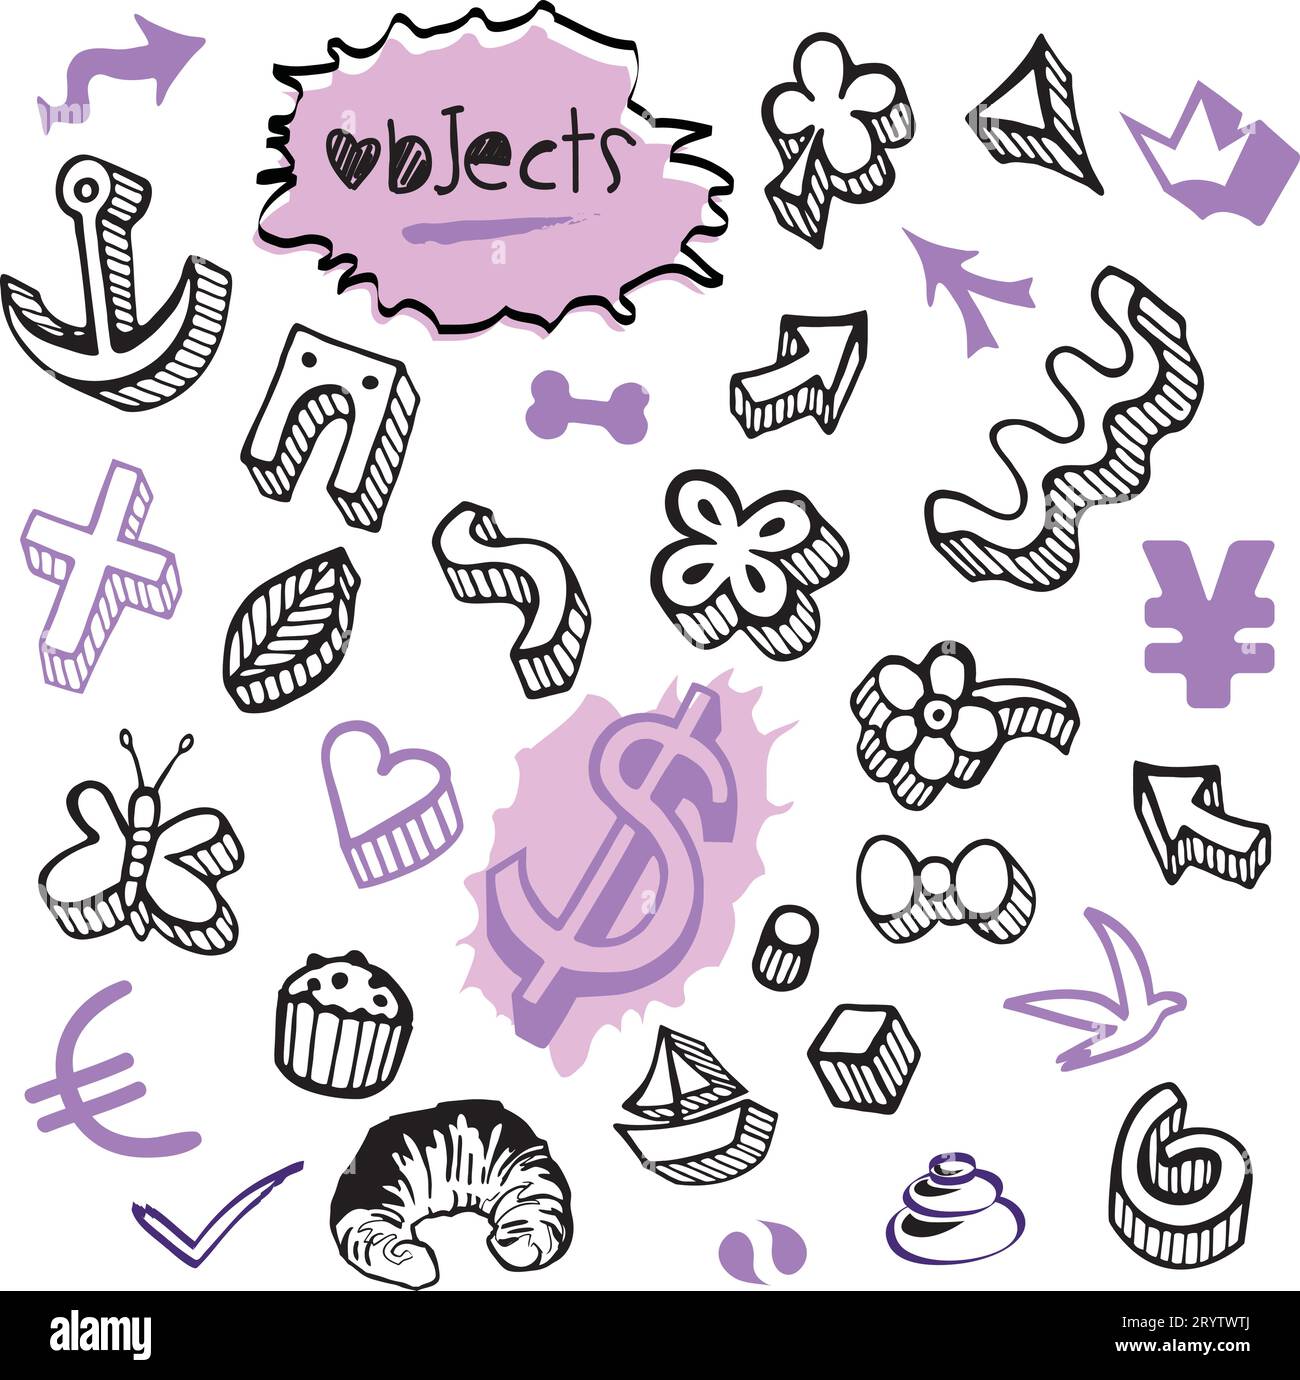 Set von Objekten Elemente Icons mit Währung, Euro und Dollar Geld Doodles in verschiedenen Farben - Vektor Design Illustration von Hand gezeichnete Kunst Stock Vektor